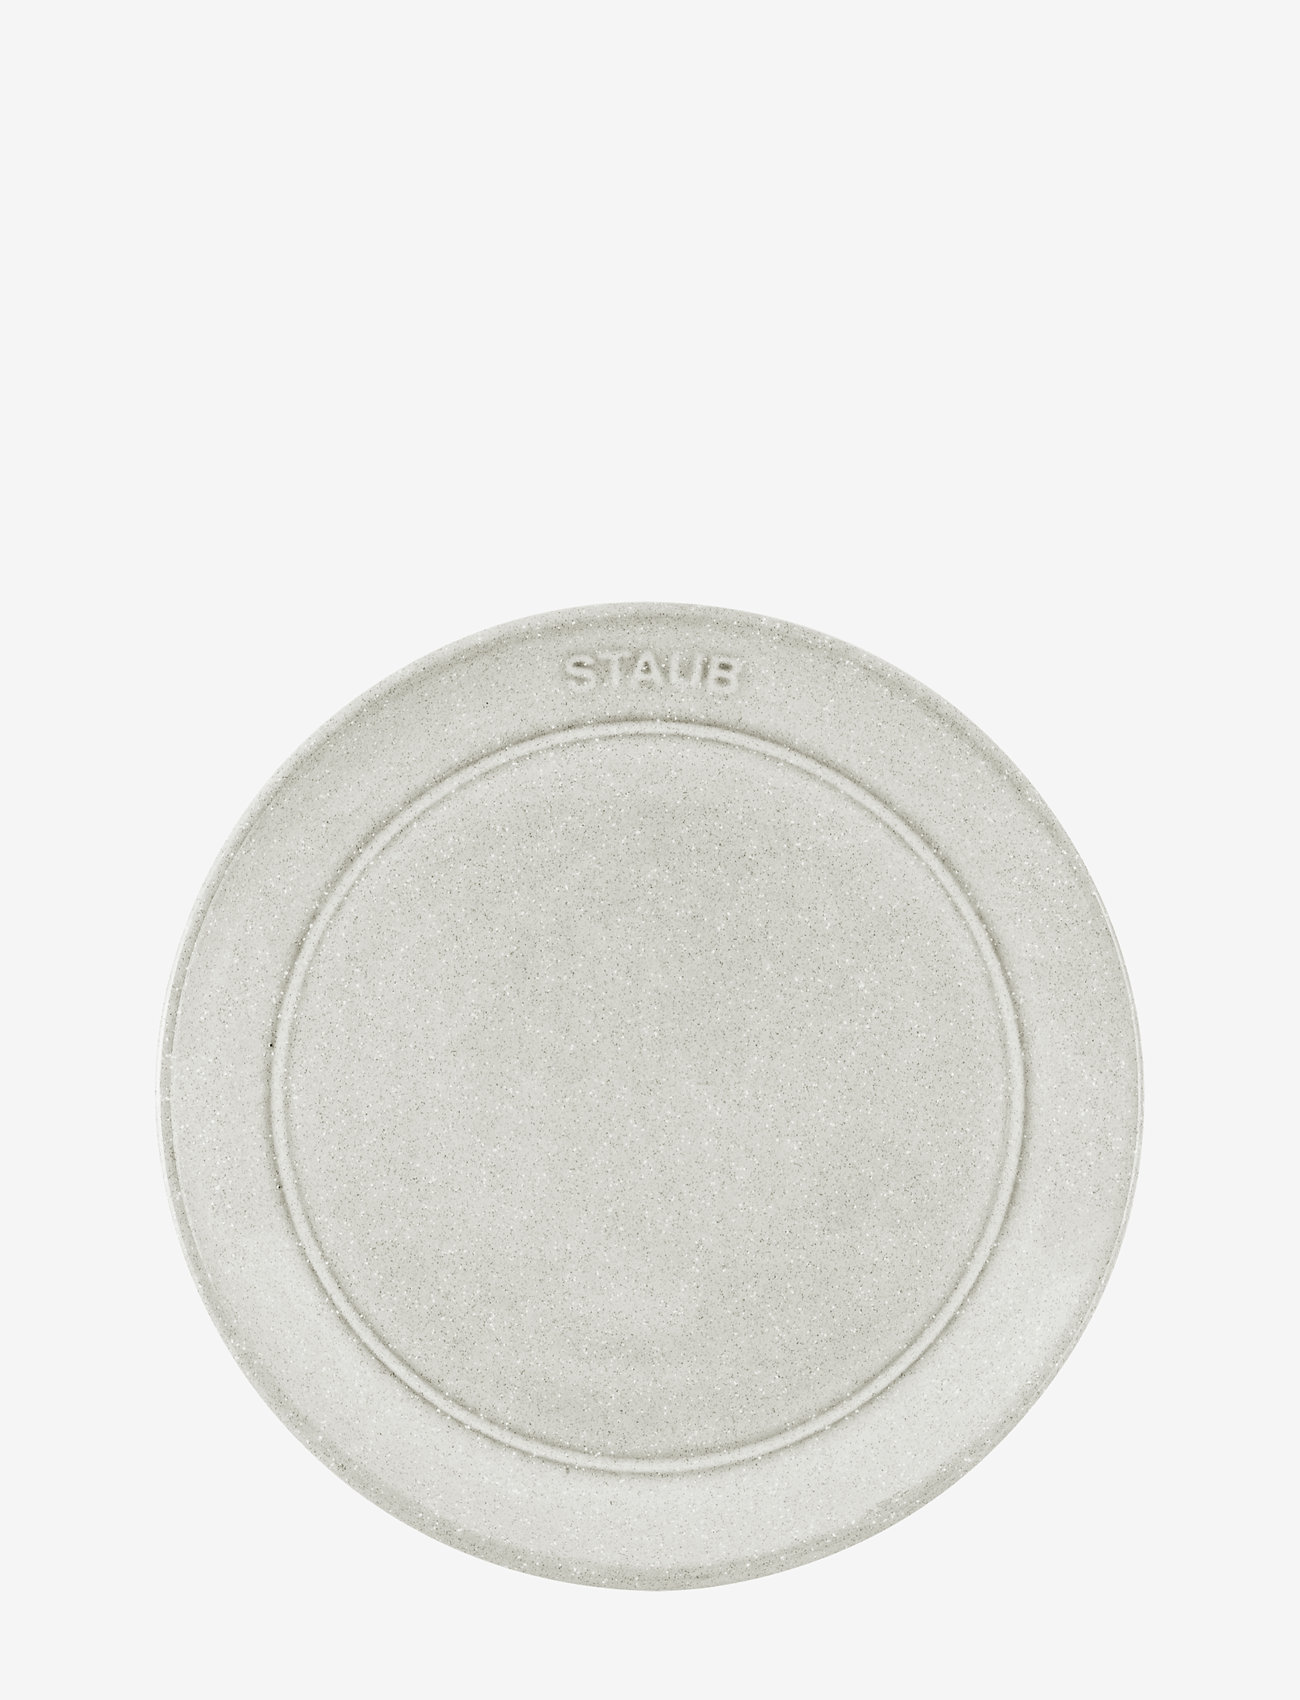 STAUB - Staub, Plate flat 15 cm, white truffle - laagste prijzen - grey - 1